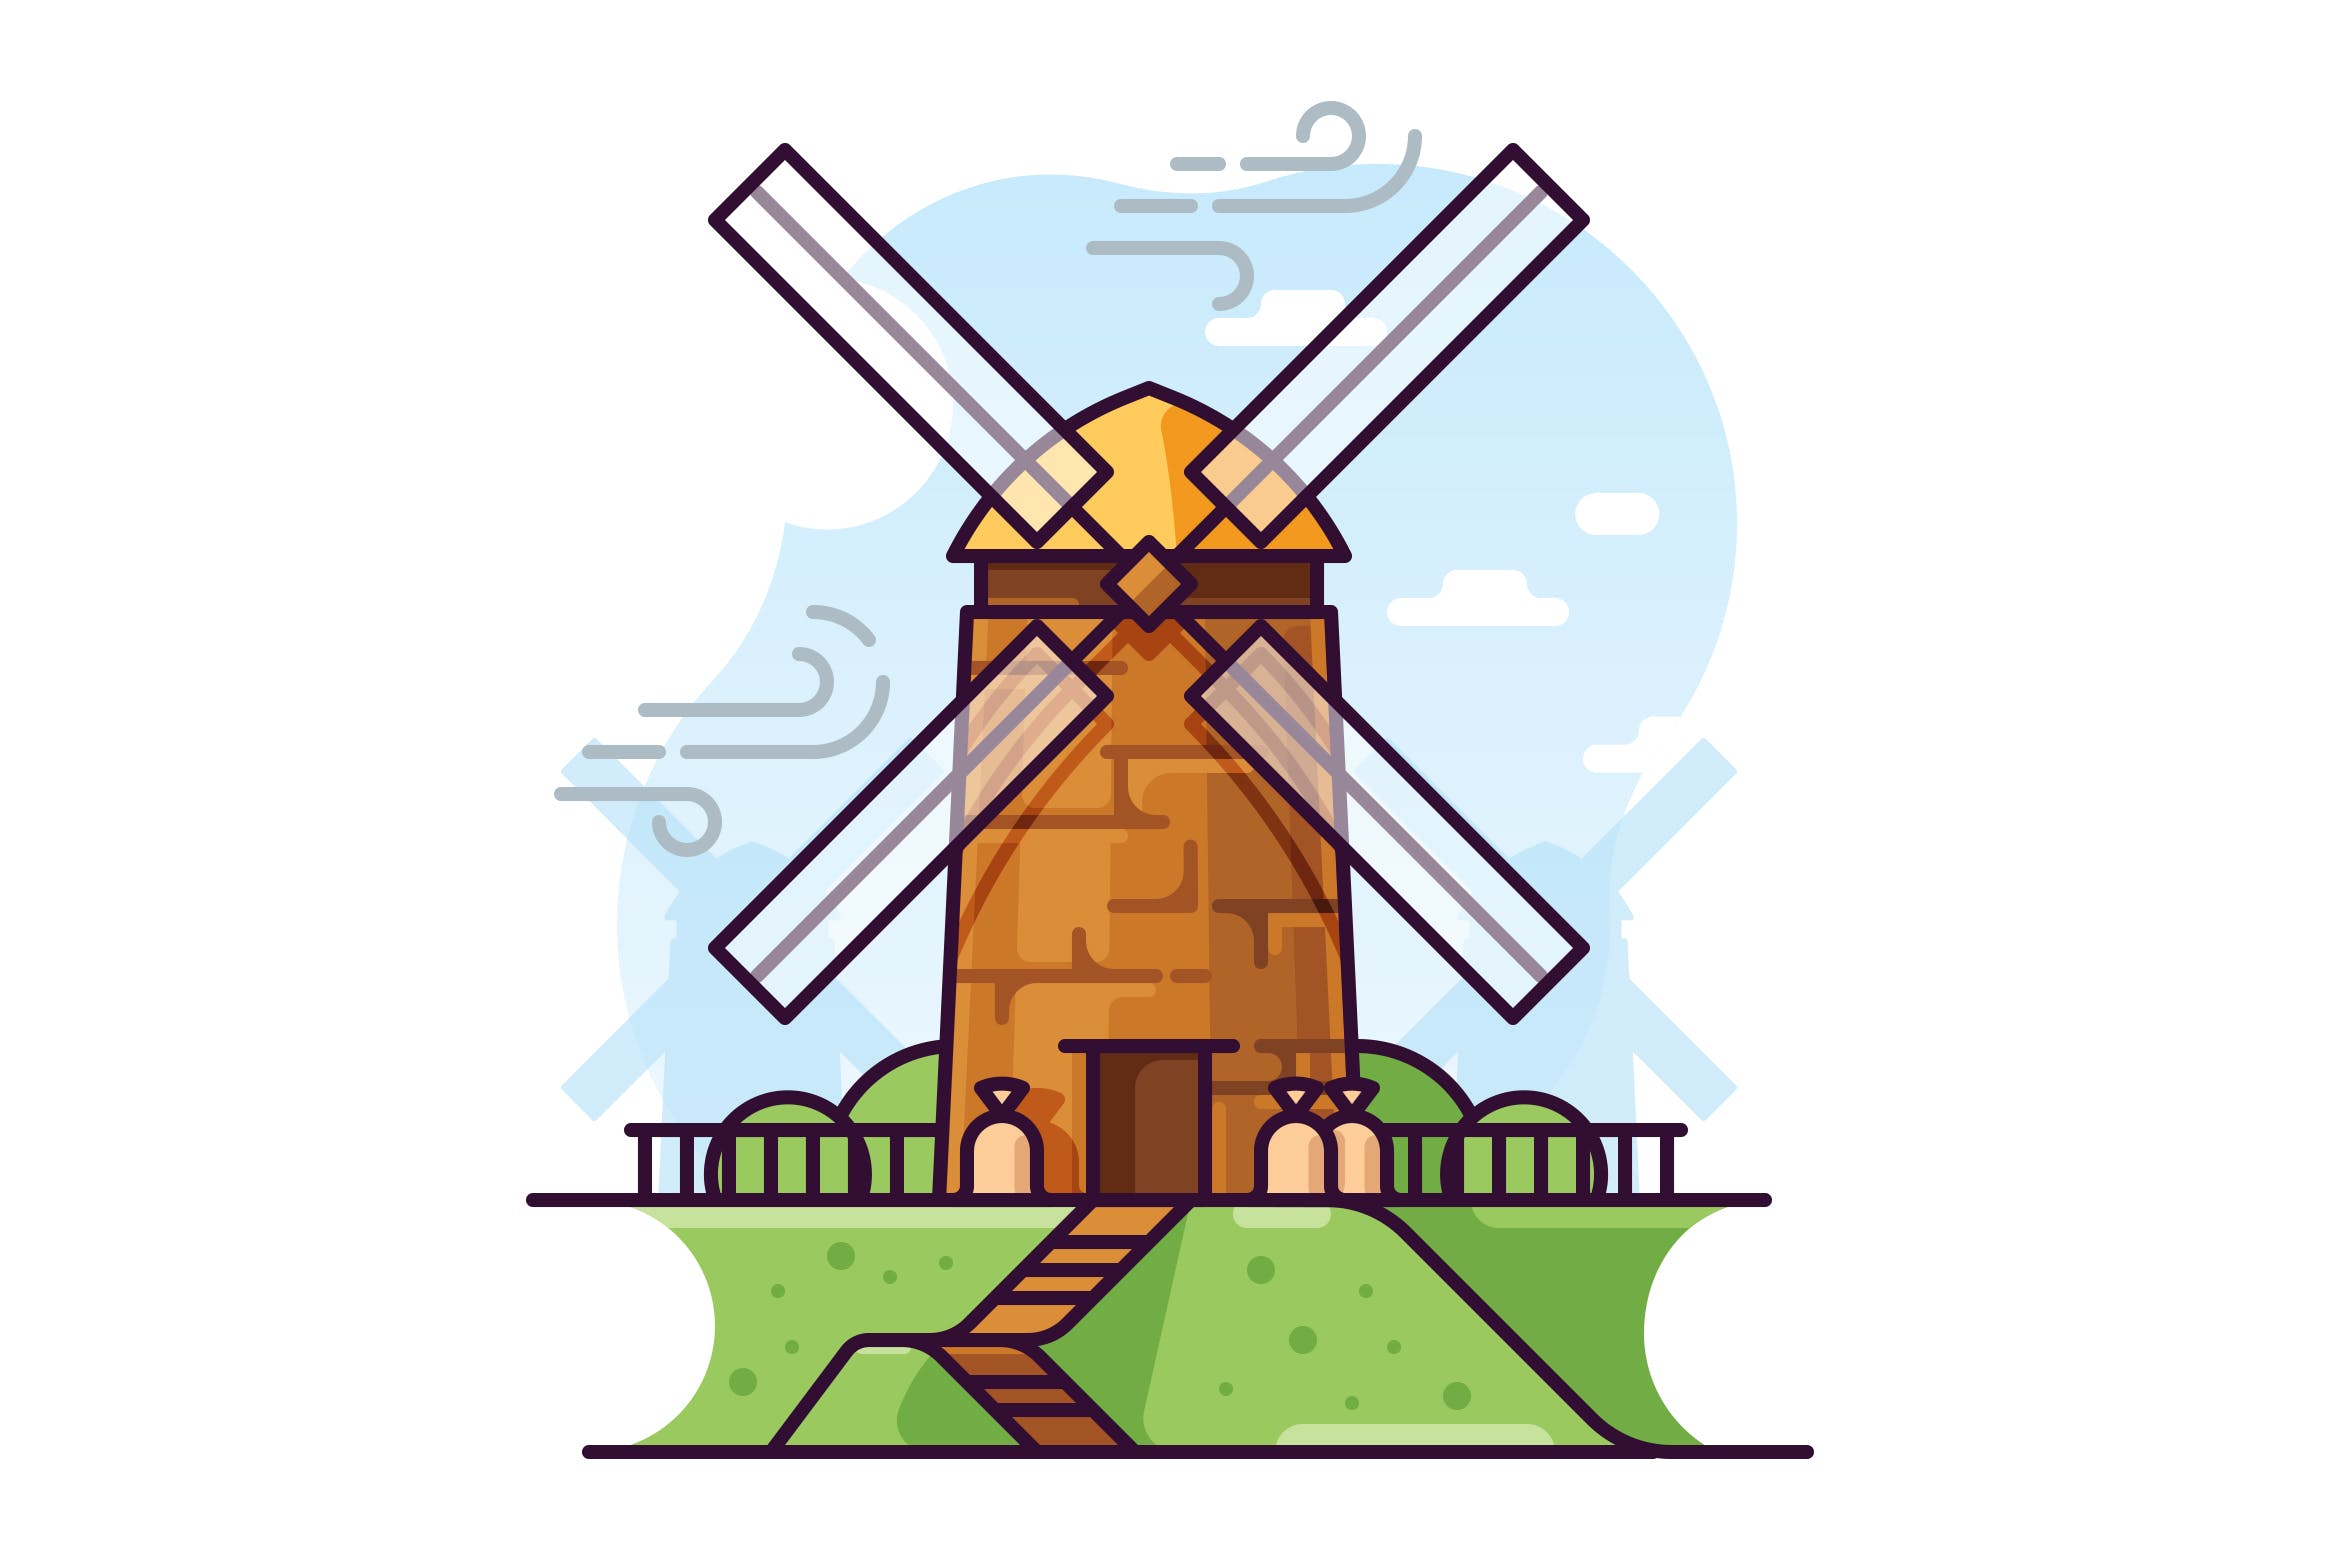 风车磨坊手绘矢量插画第一素材精选素材 Windmill illustration插图